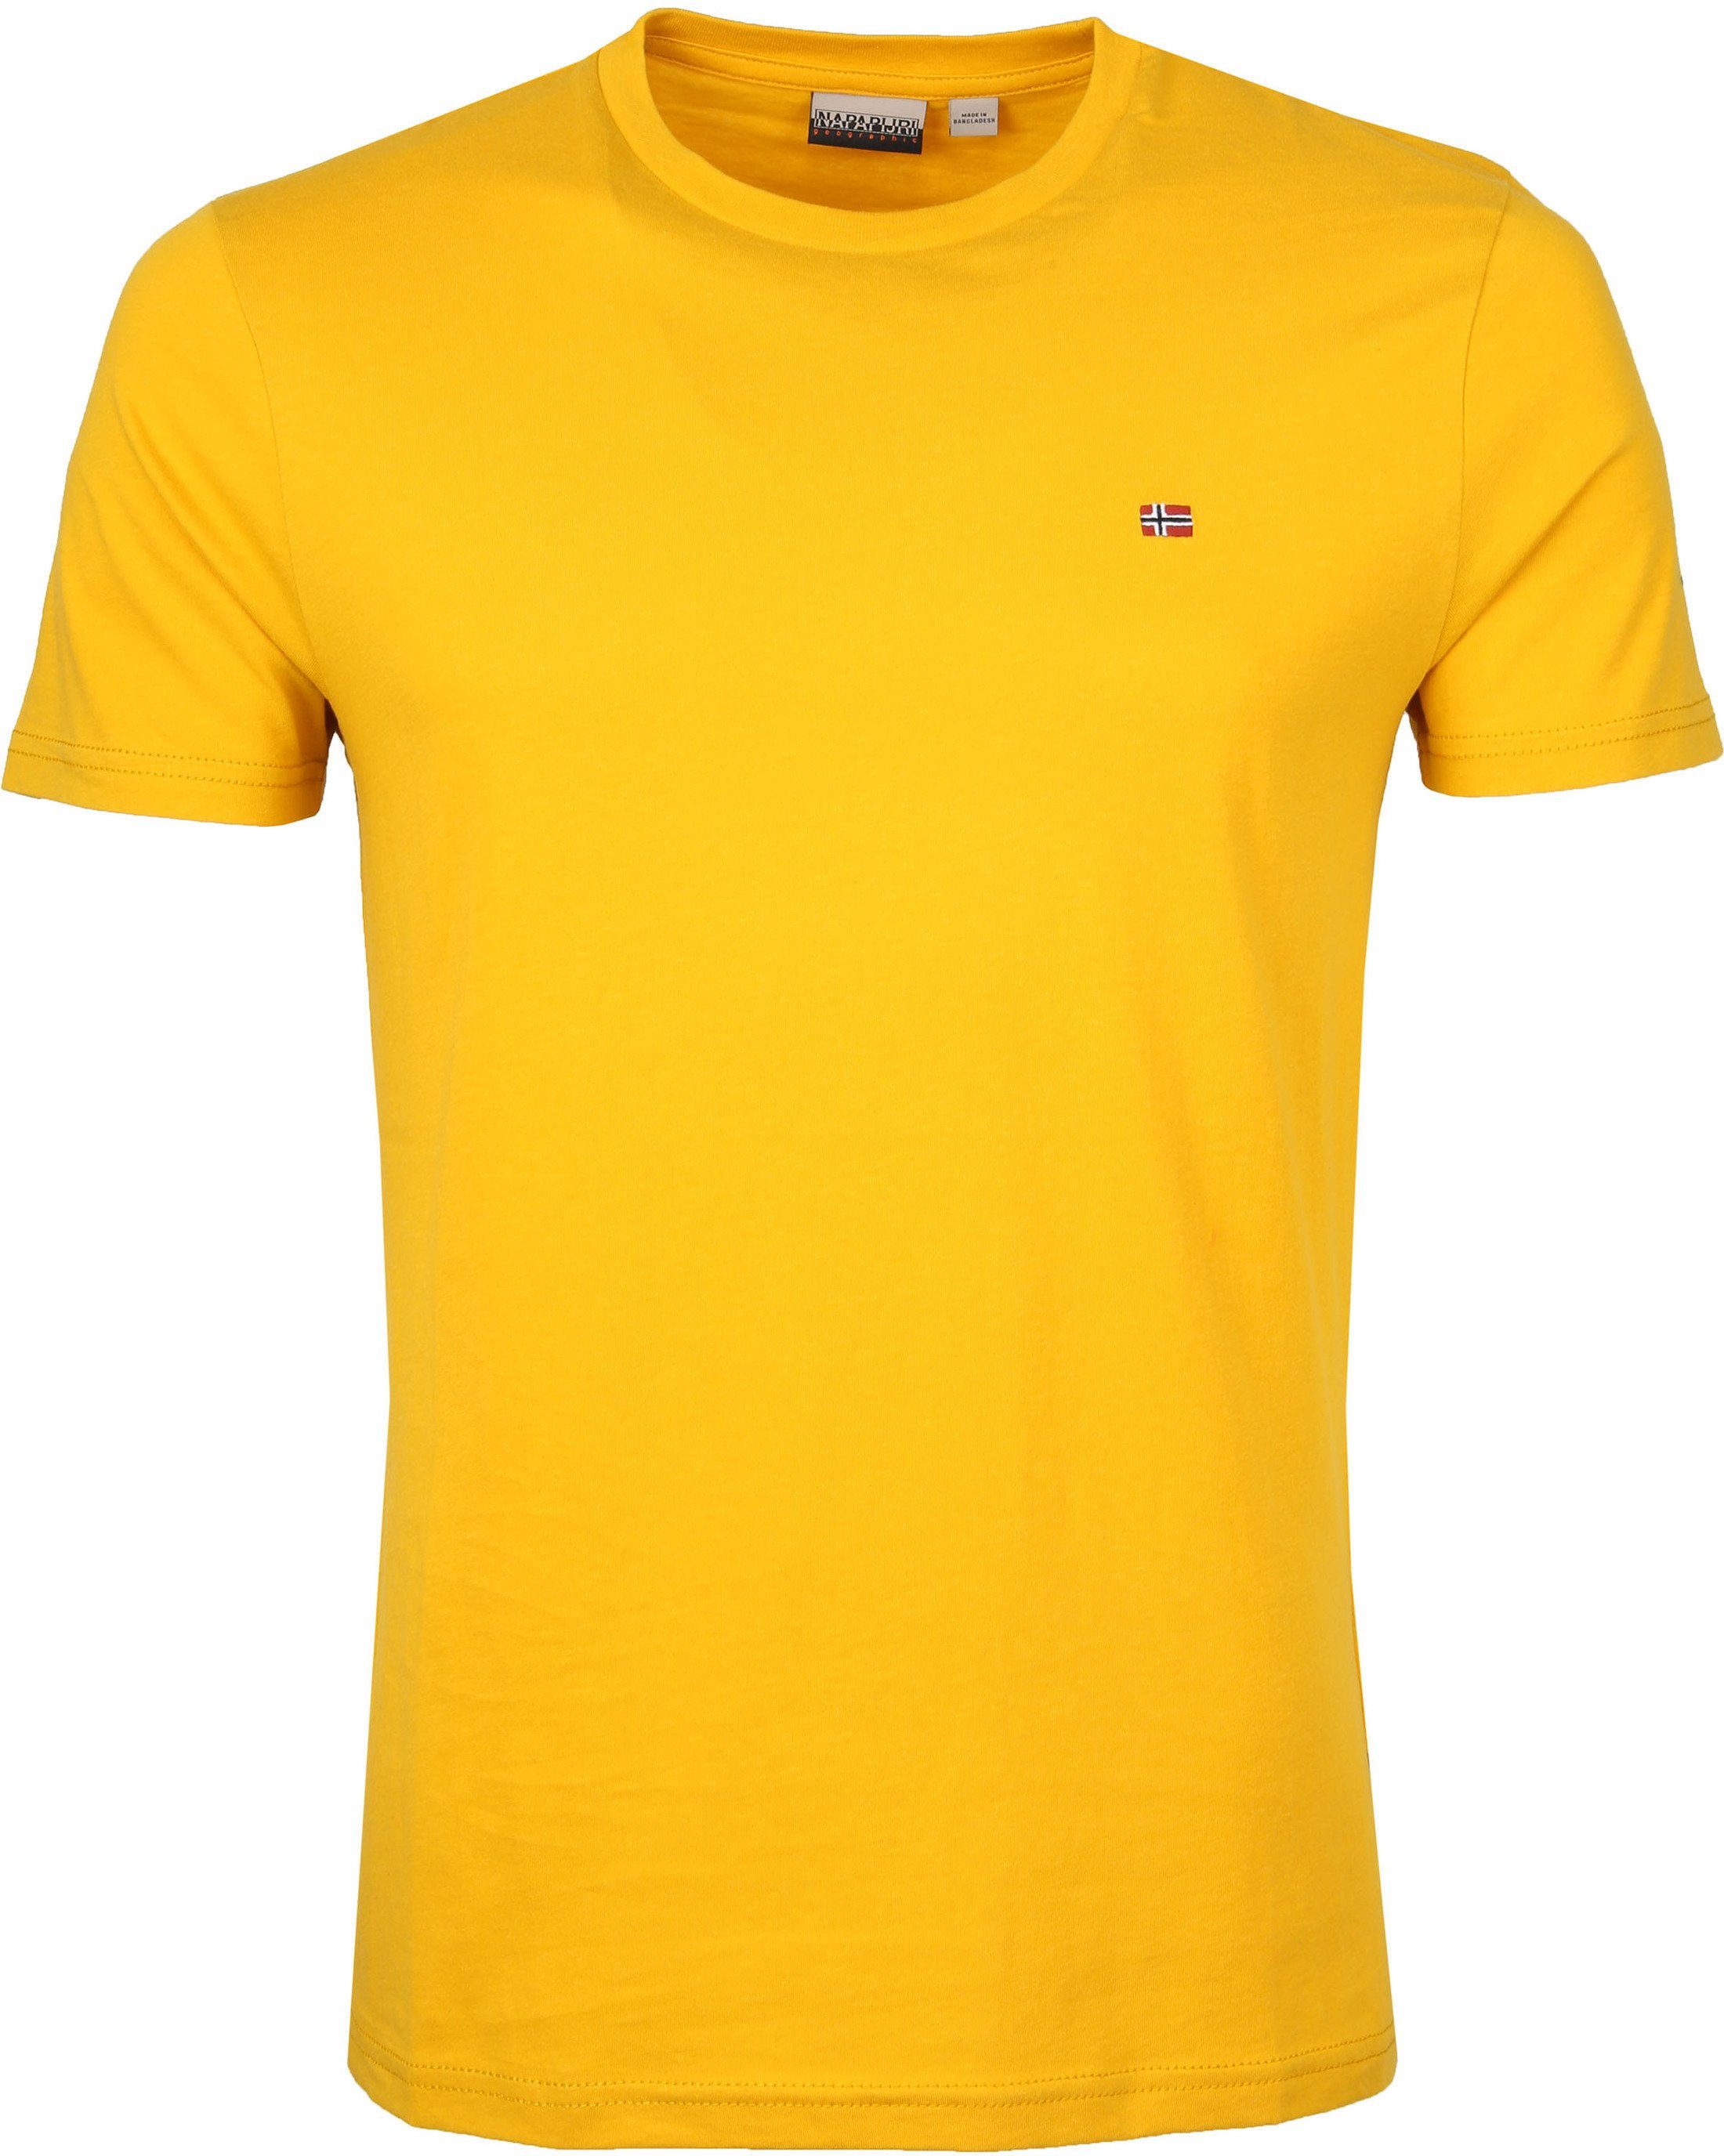 Napapijri Selios T-shirt Yellow size XL